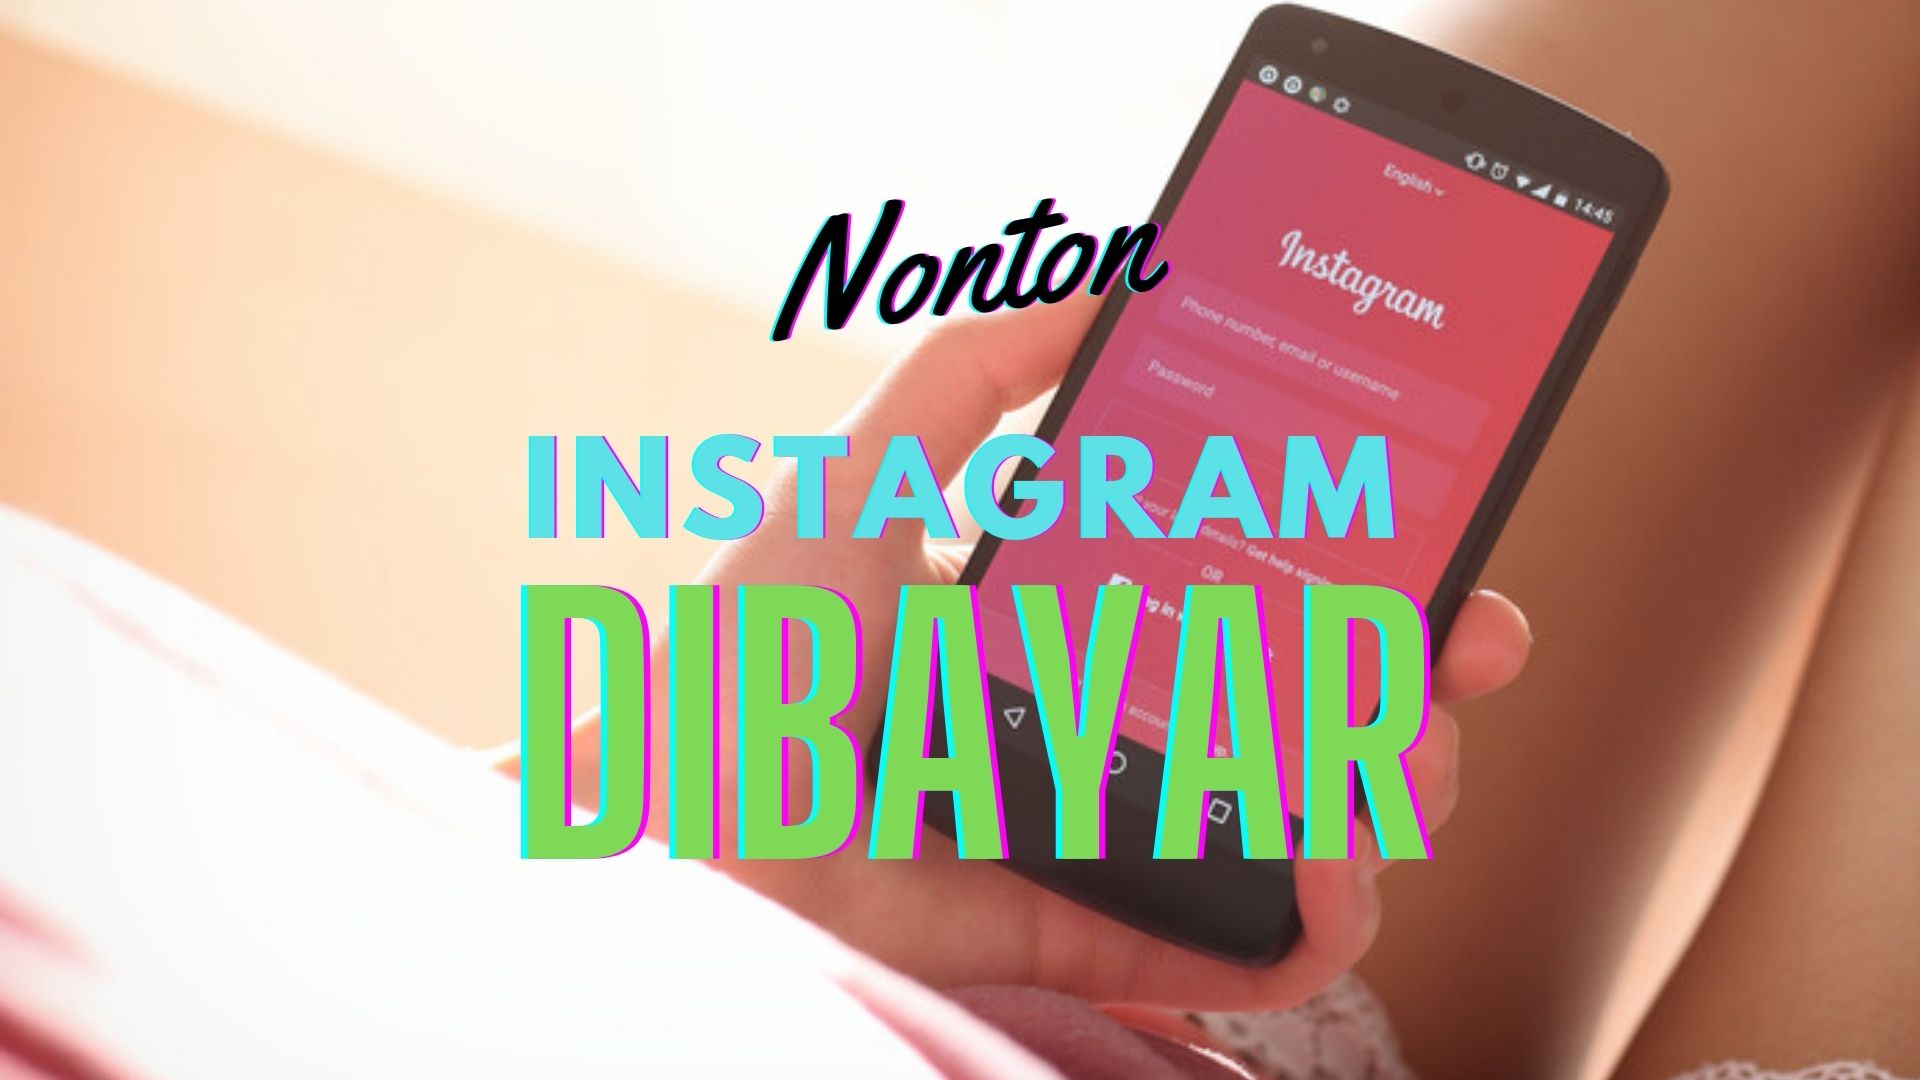 Cara Mendapatkan Saldo Dana GRATIS Cuma Nonton Instagram Dibayar Rp250k APK Penghasil Uang Terbaru 2022 Bikin Panen Uang!
(ilustrasi)